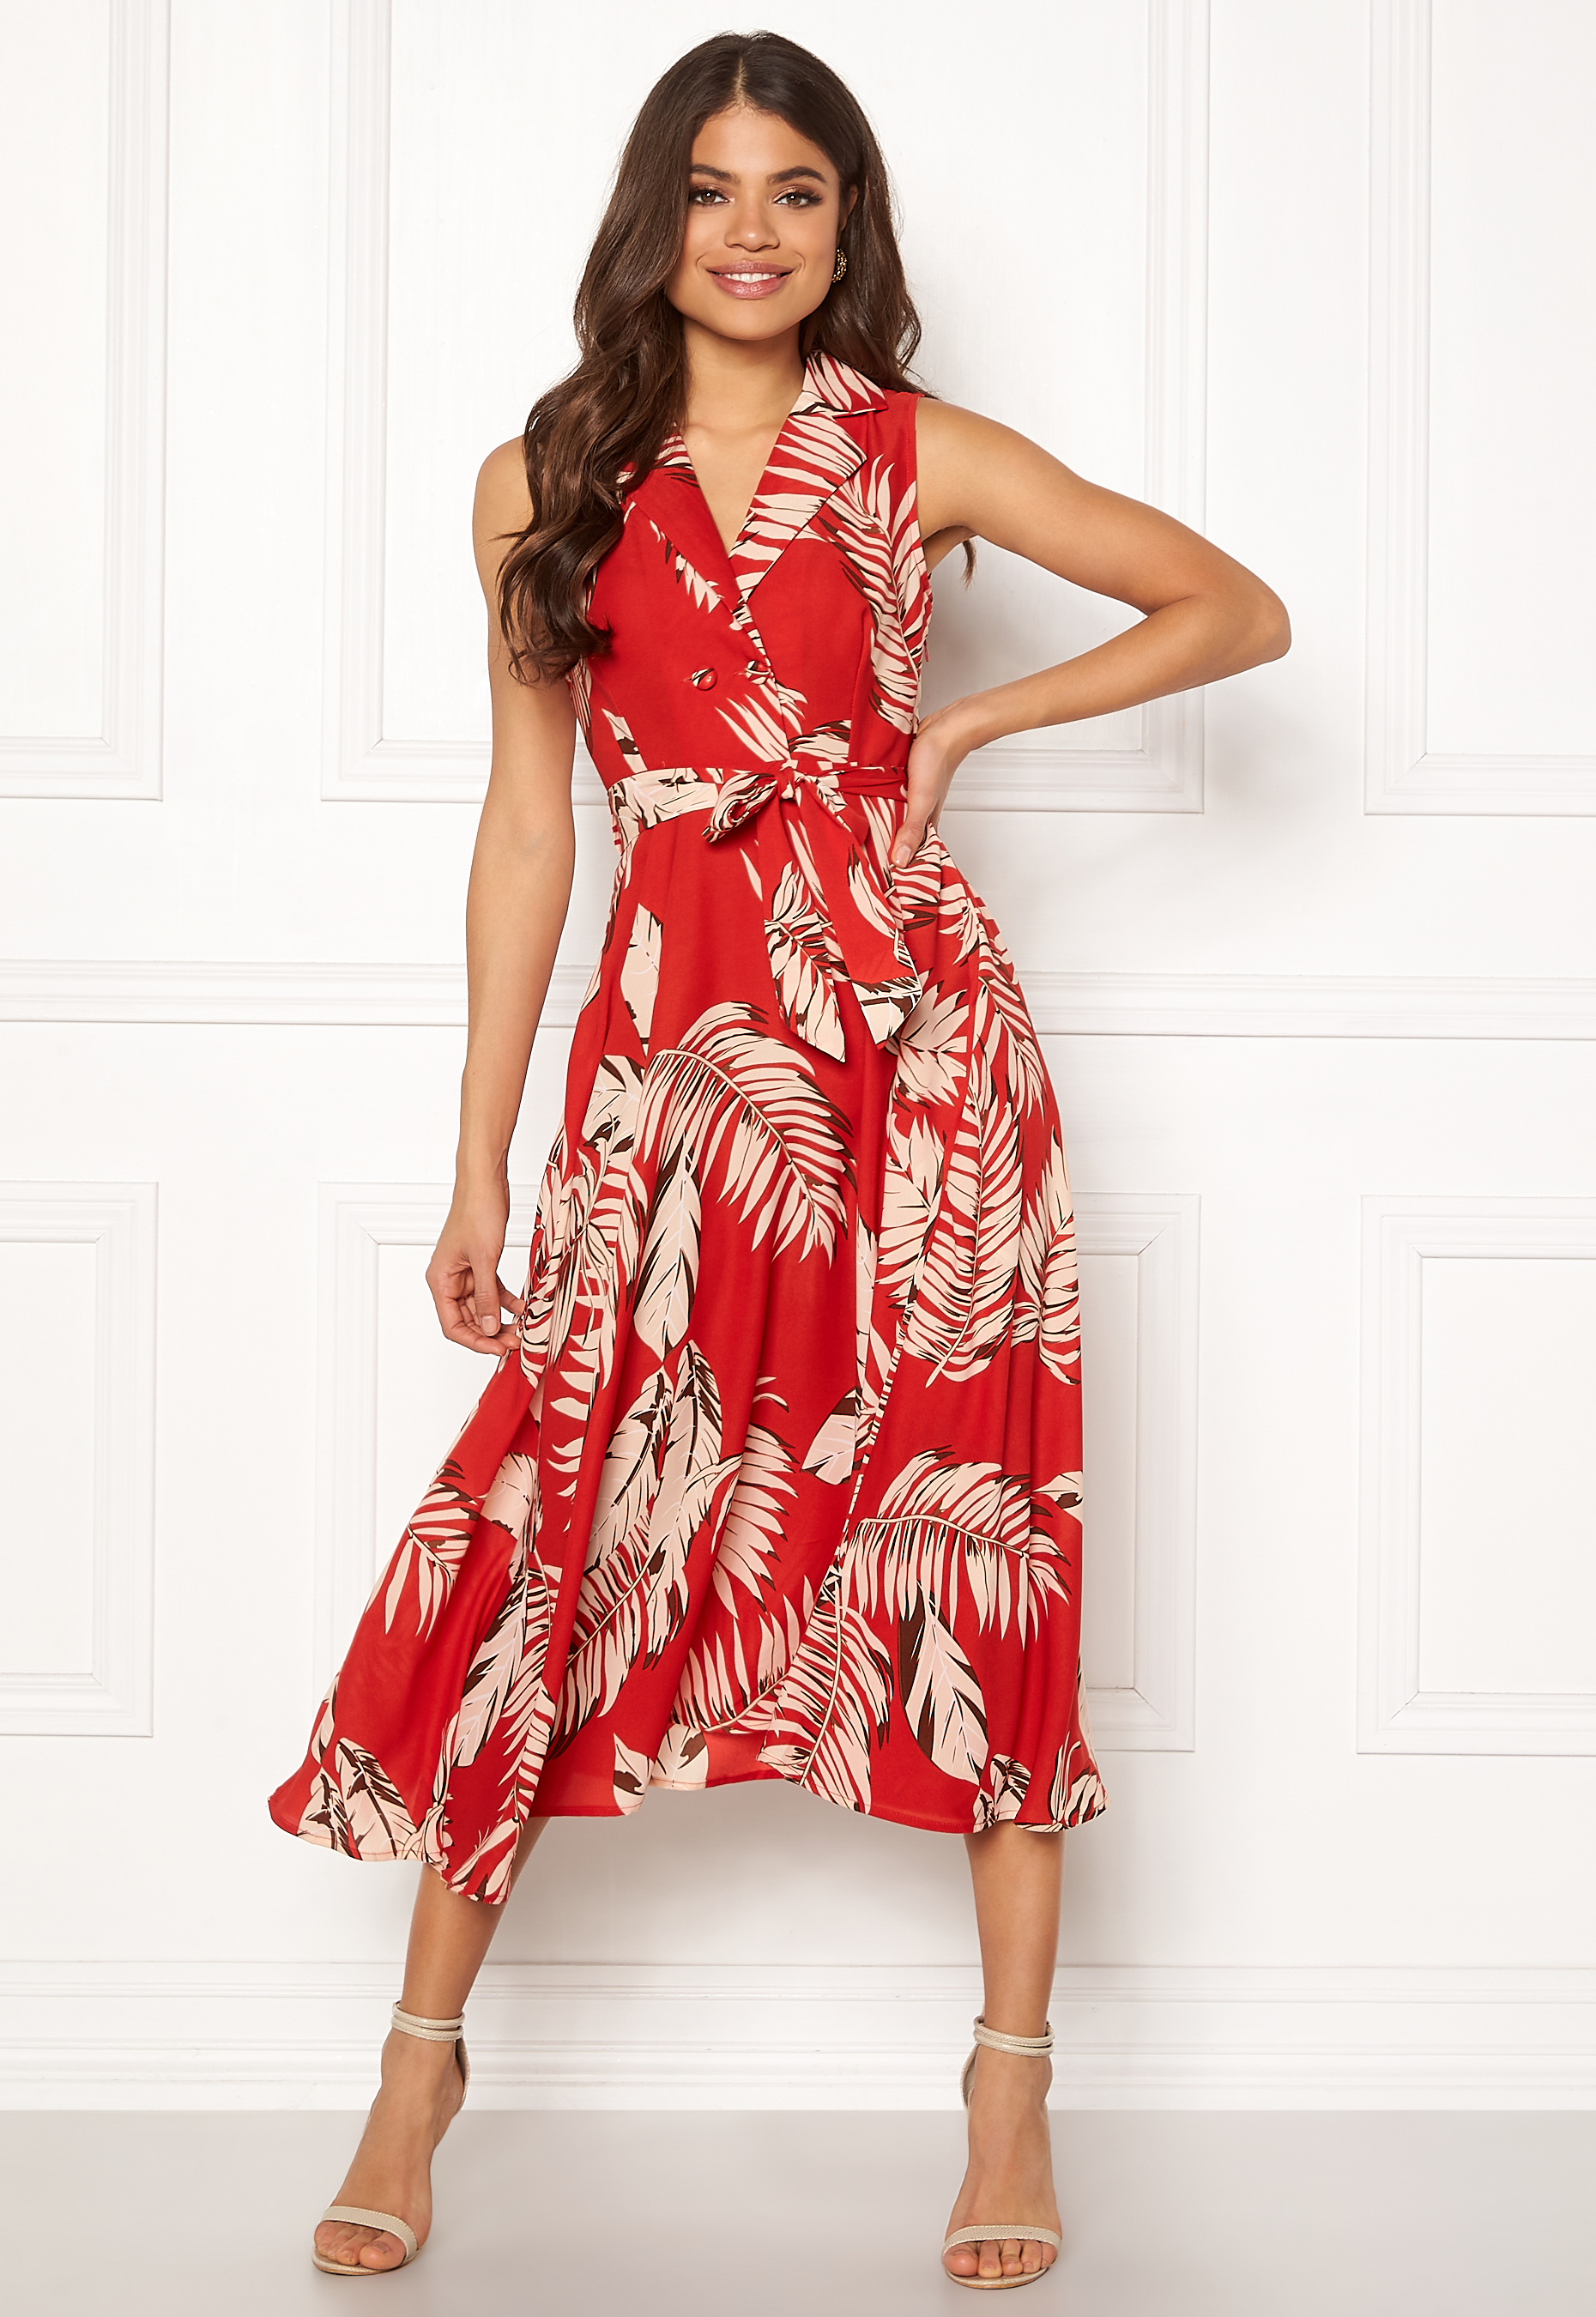 red print midi dress